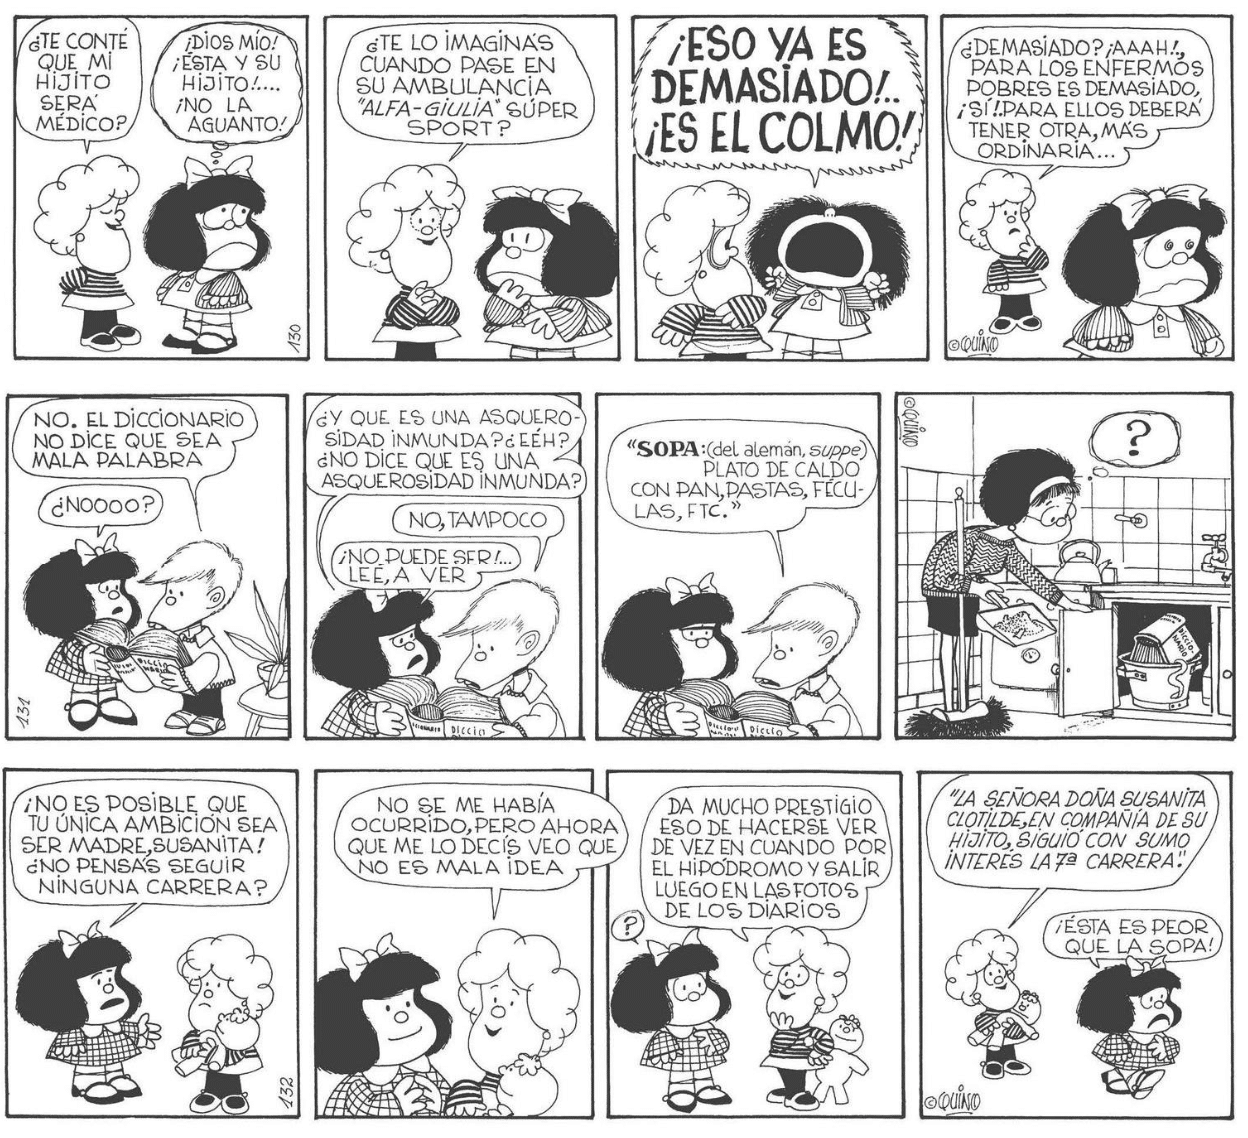 Los invidentes también podrán disfrutar de los cómic de Mafalda, ¡por fin en braille! 44